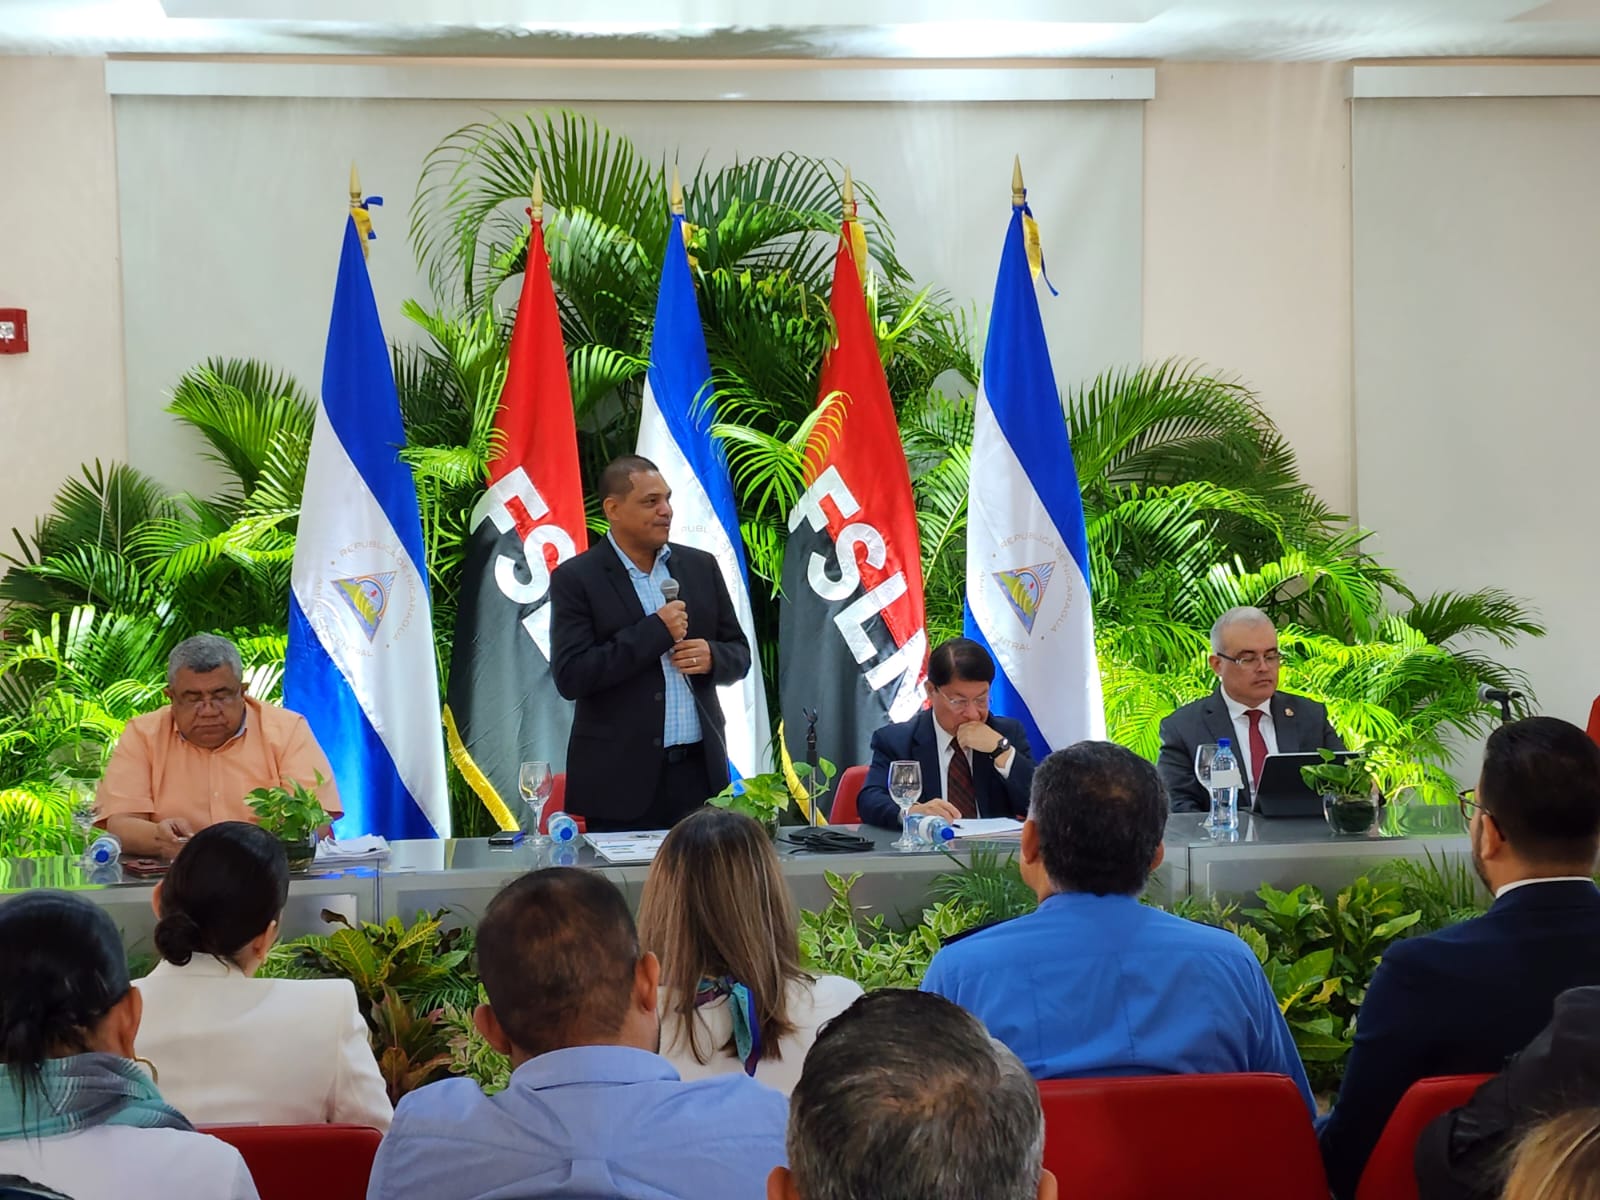 Estiman crecimiento económico de 3.7% a partir de este año Managua. Danielka Ruíz, Radio La Primerísima